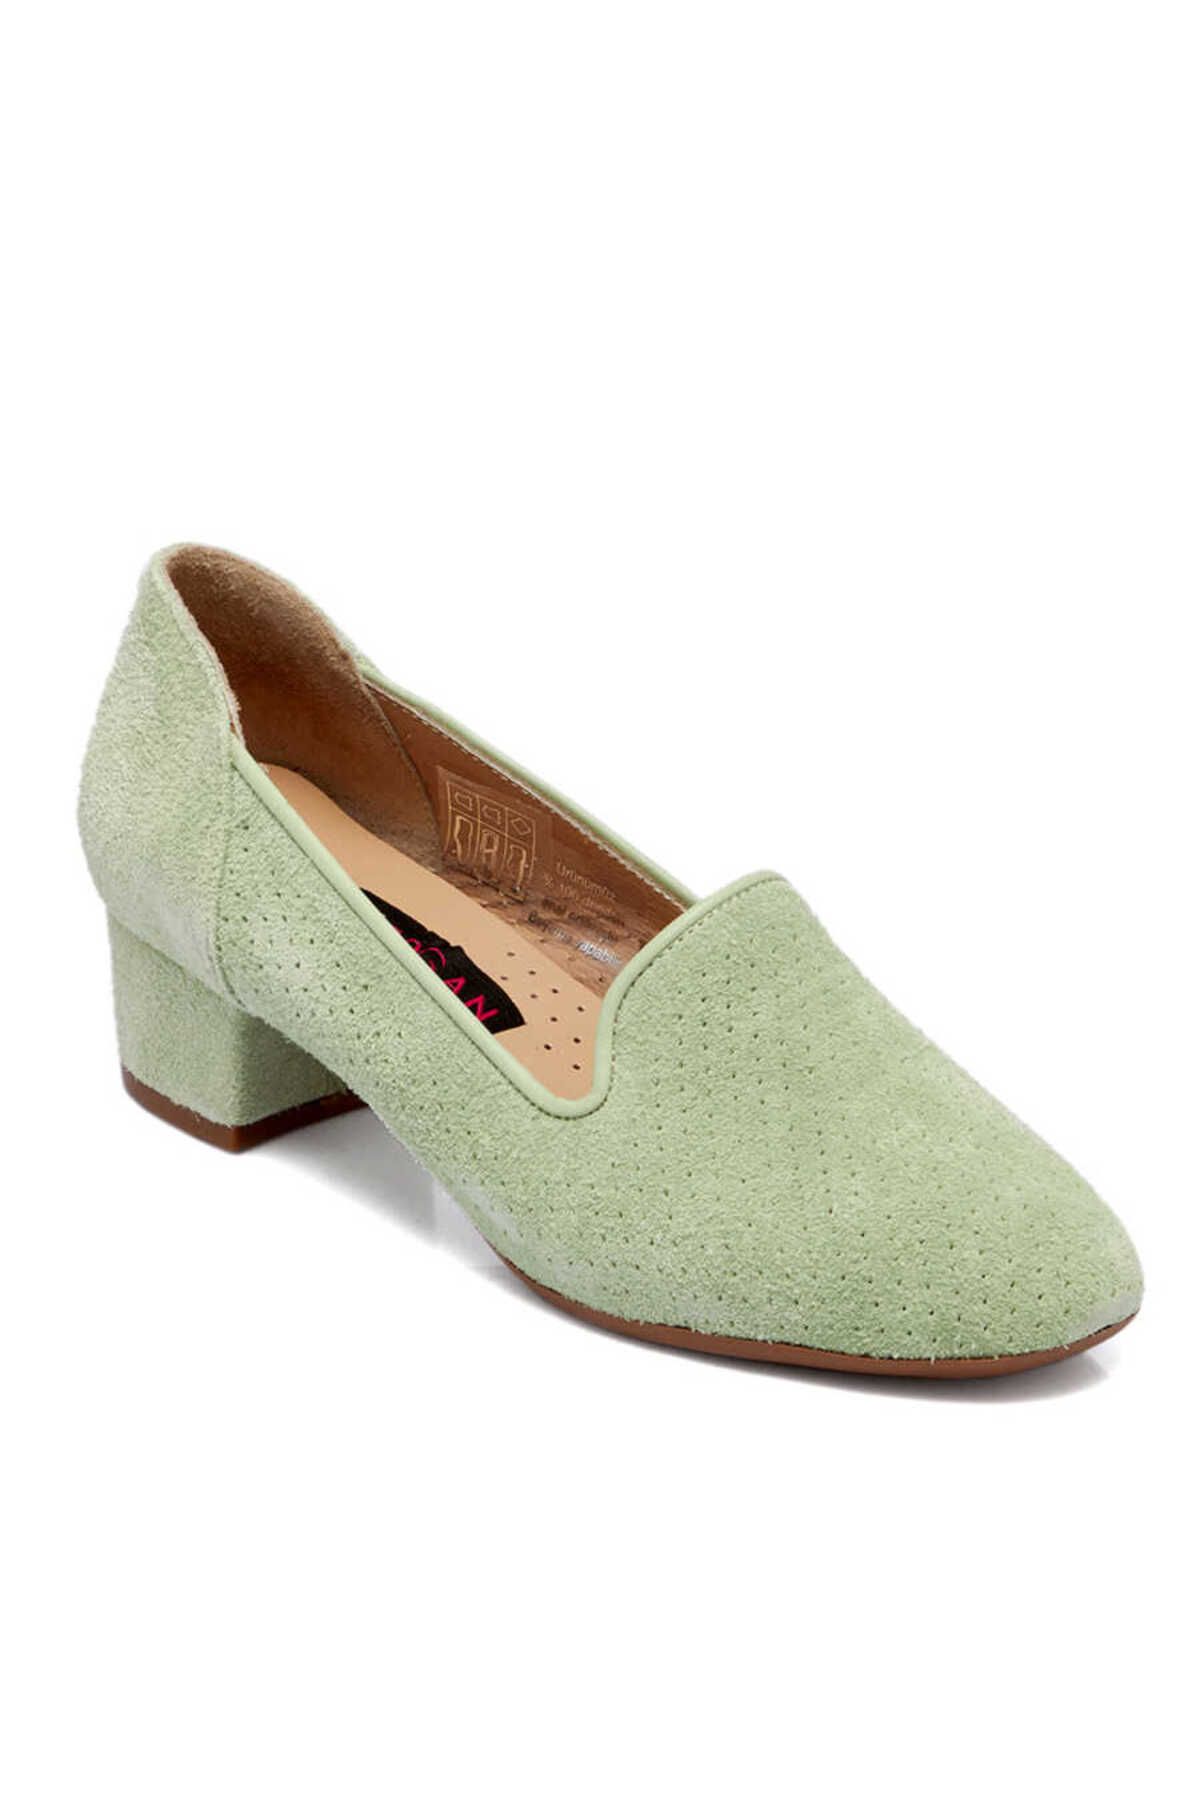 Tergan Yeşil Süet Deri Kadın Topuklu Ayakkabı - K23I1AY66657-S2R